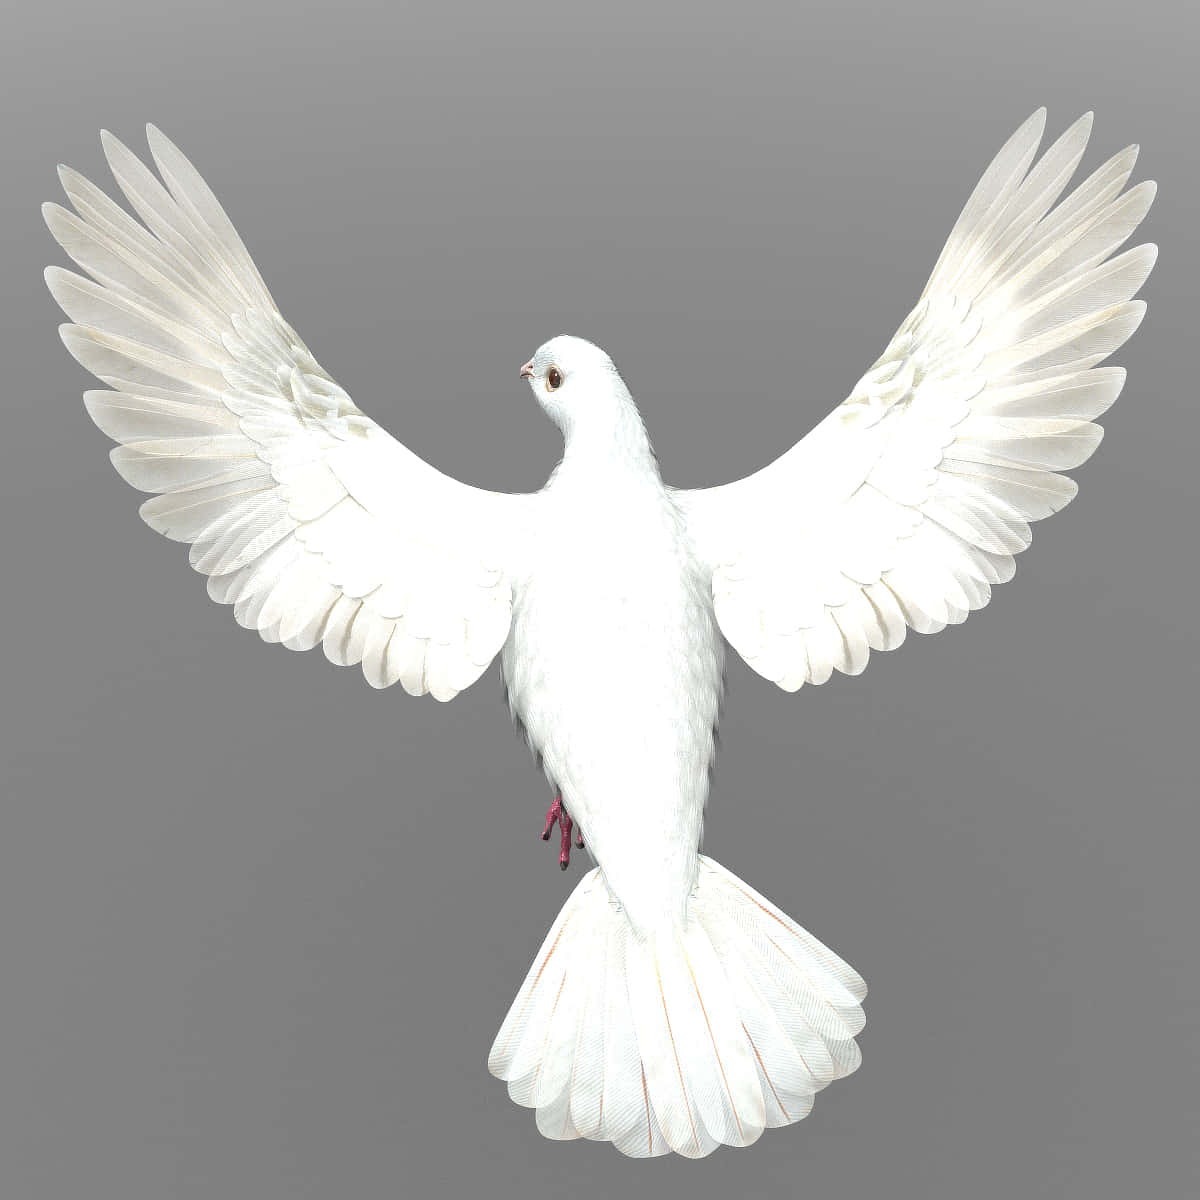 Sientela Libertad Del Vuelo Con Dove Wings. Fondo de pantalla